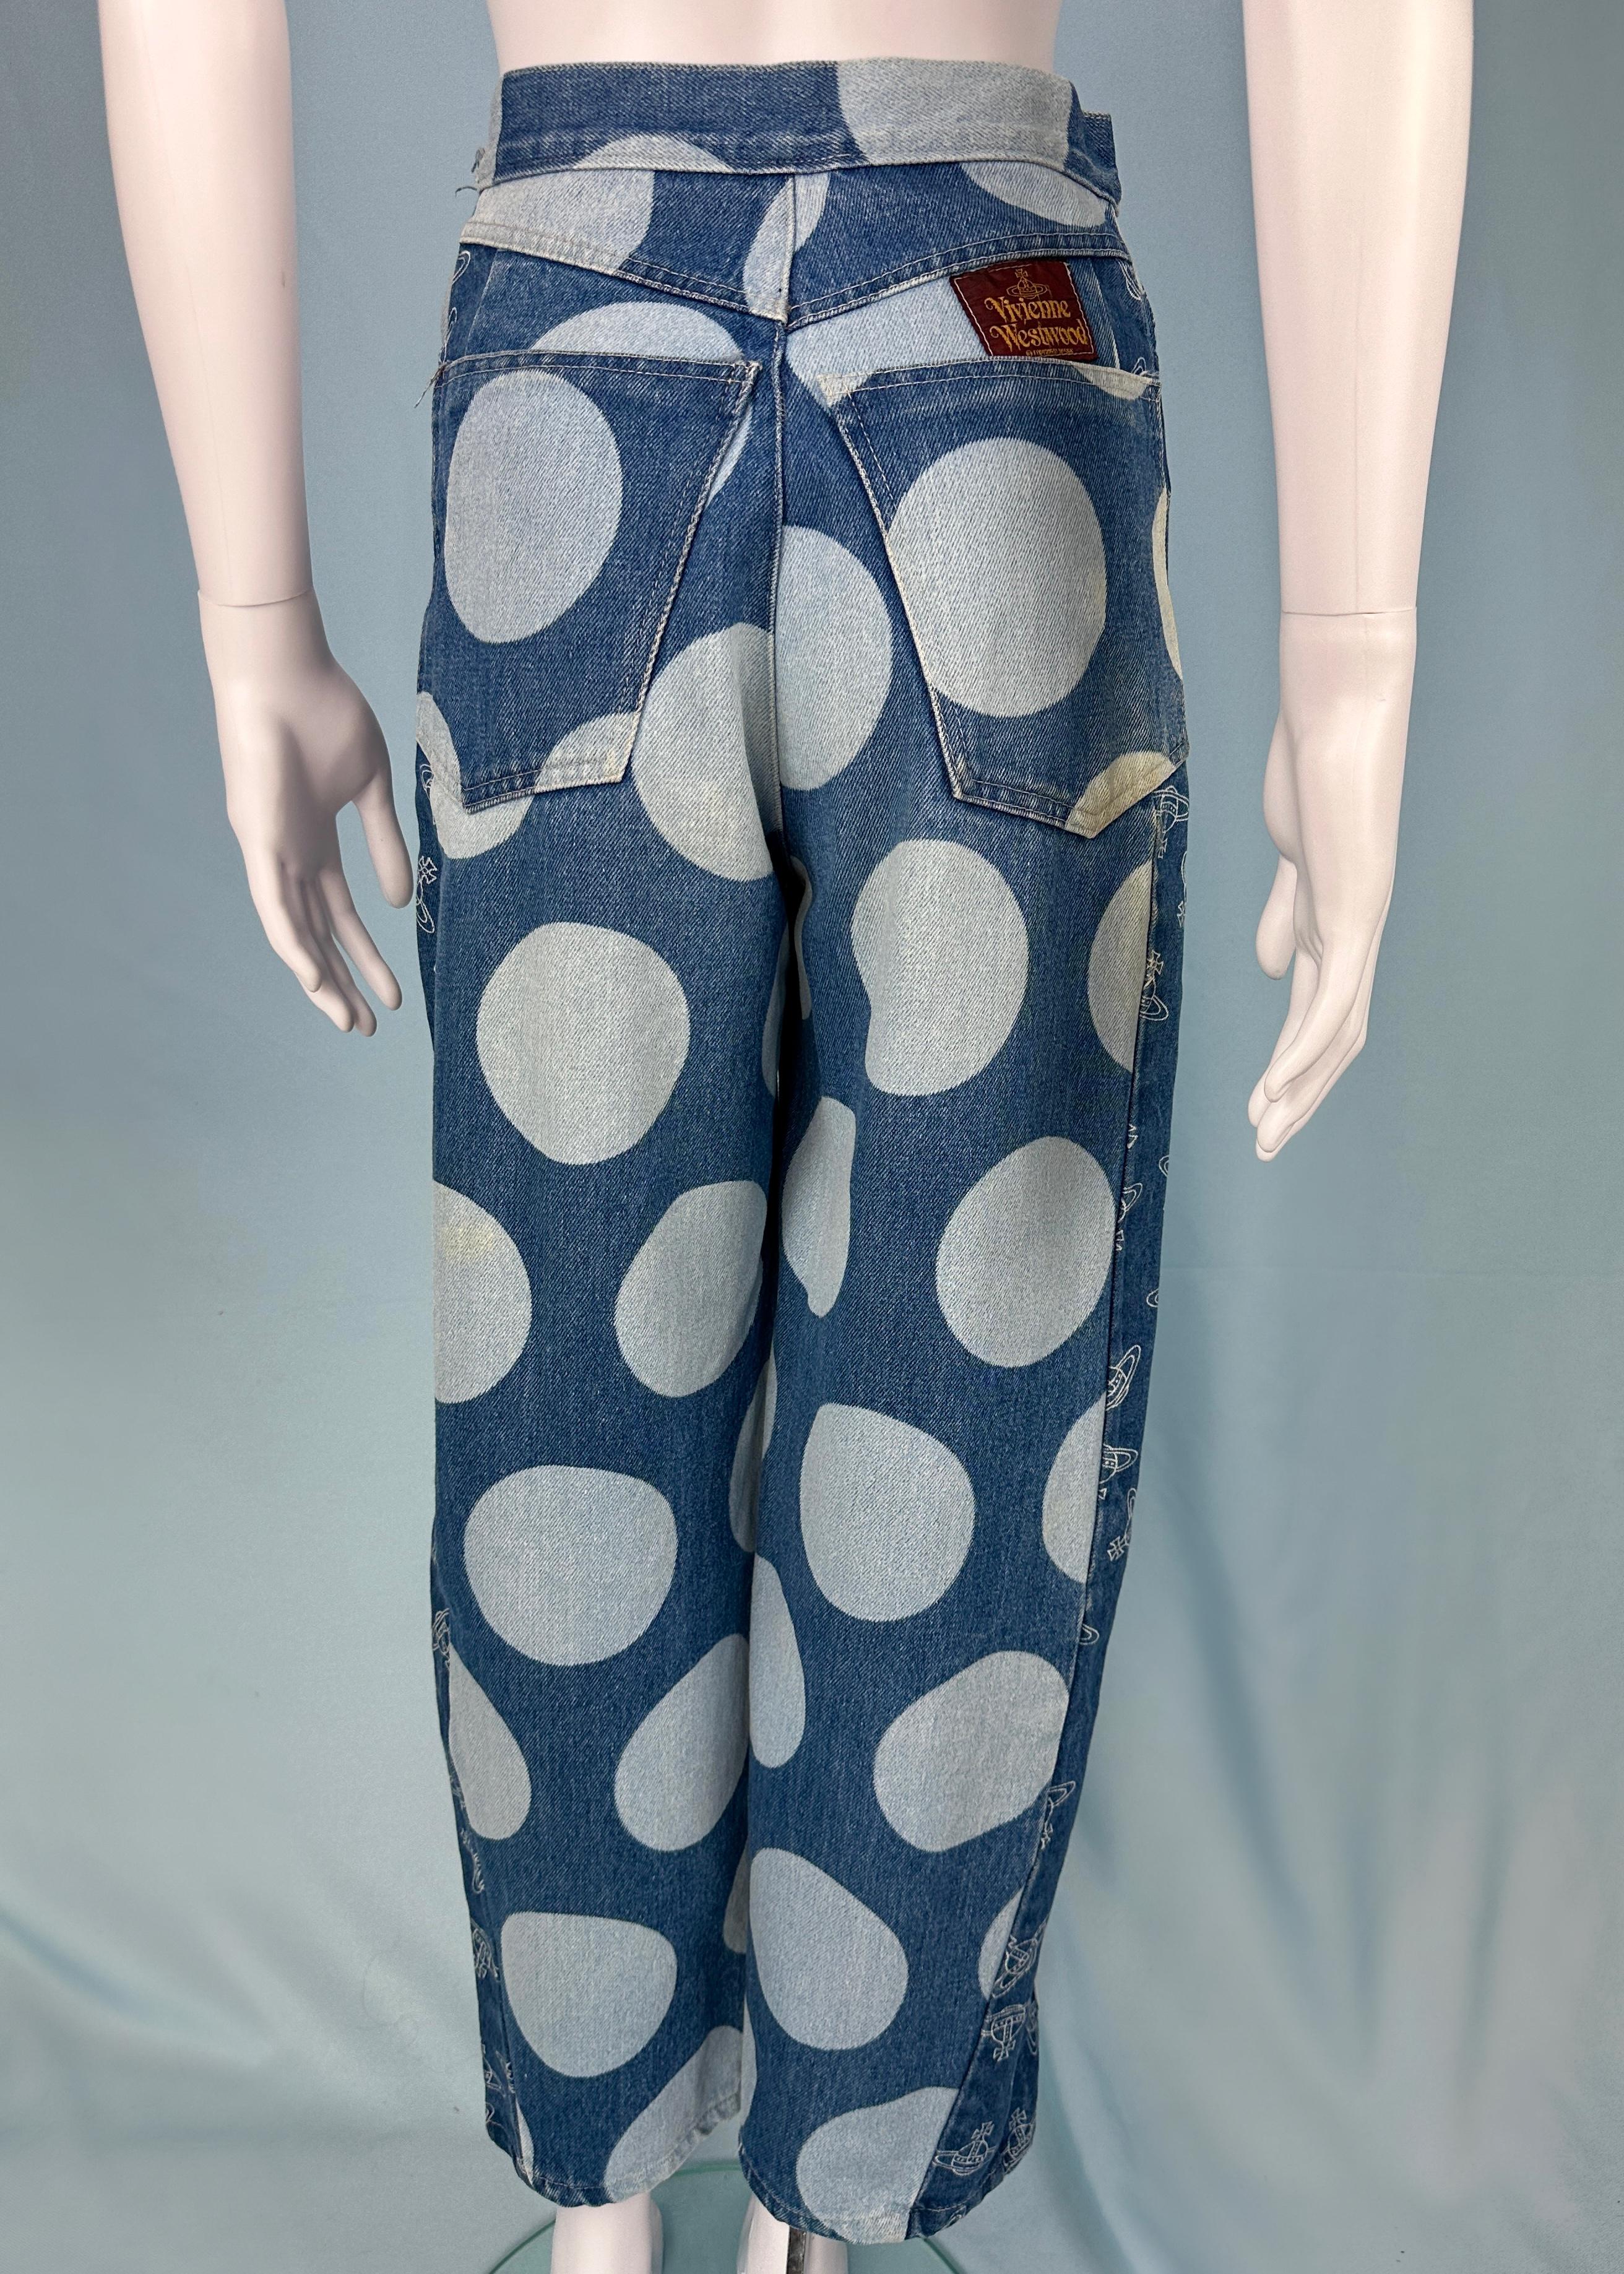 Vivienne Westwood Spring 1986 Orb & Polka Dot Denim Jeans 1